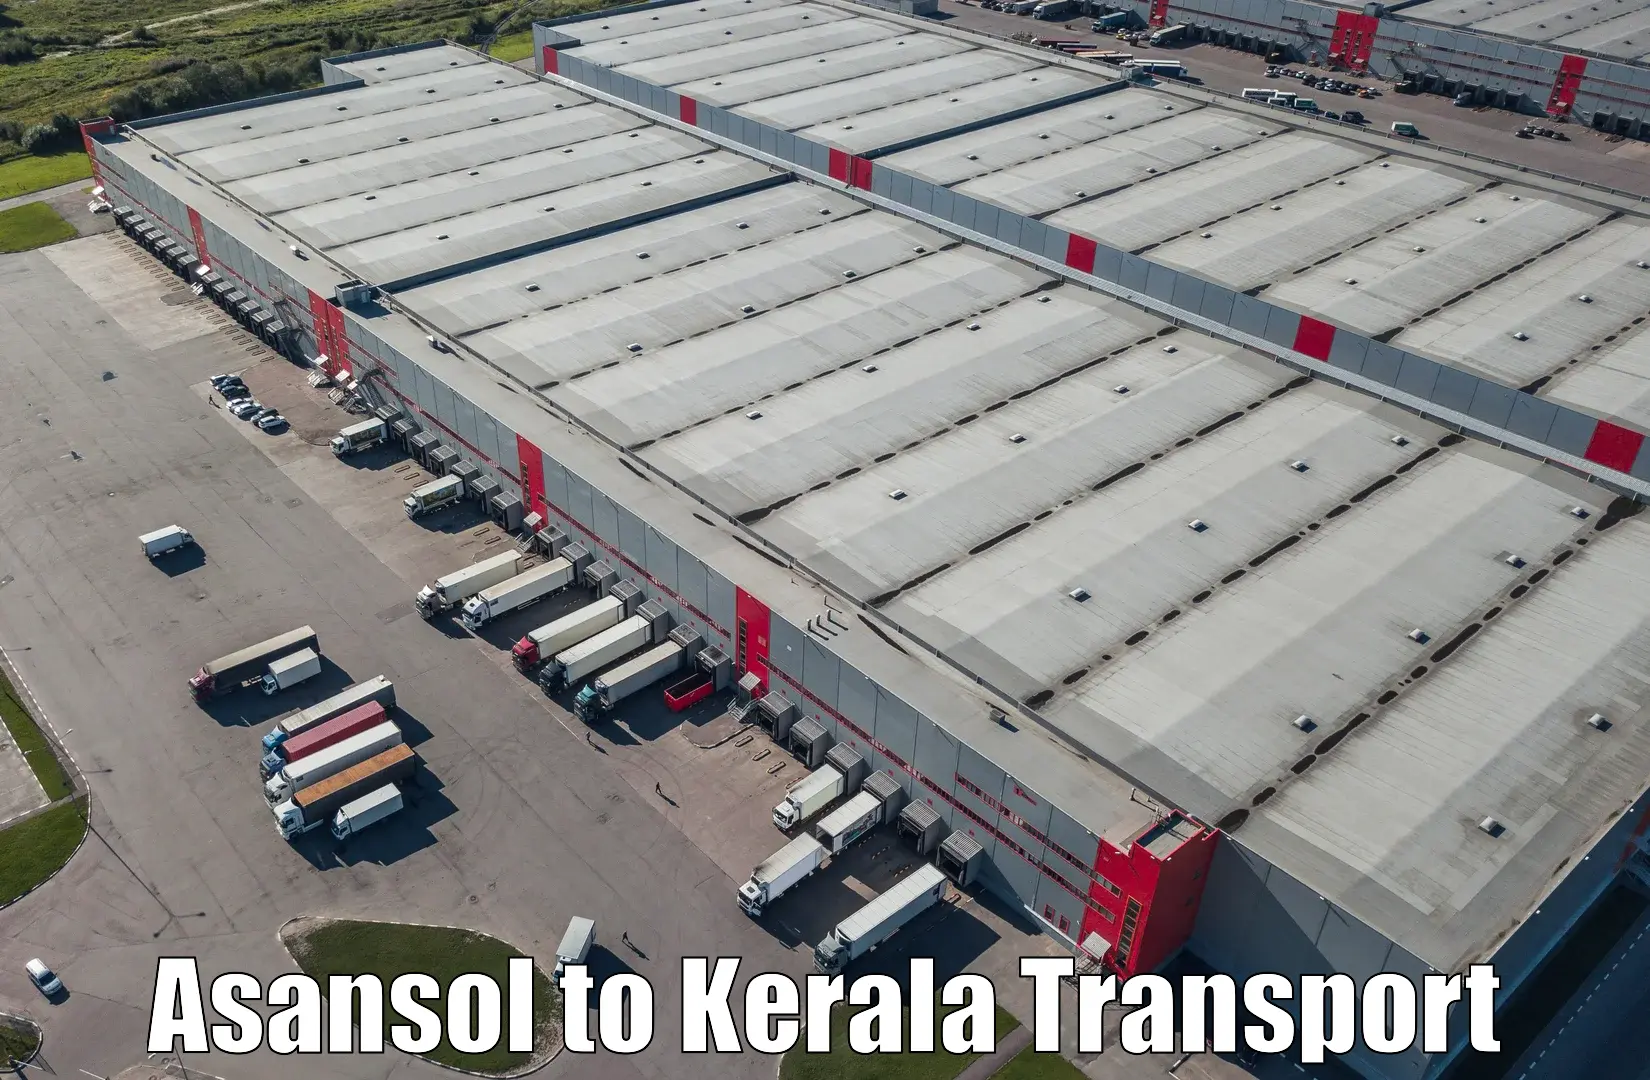 Online transport service Asansol to Kanhangad